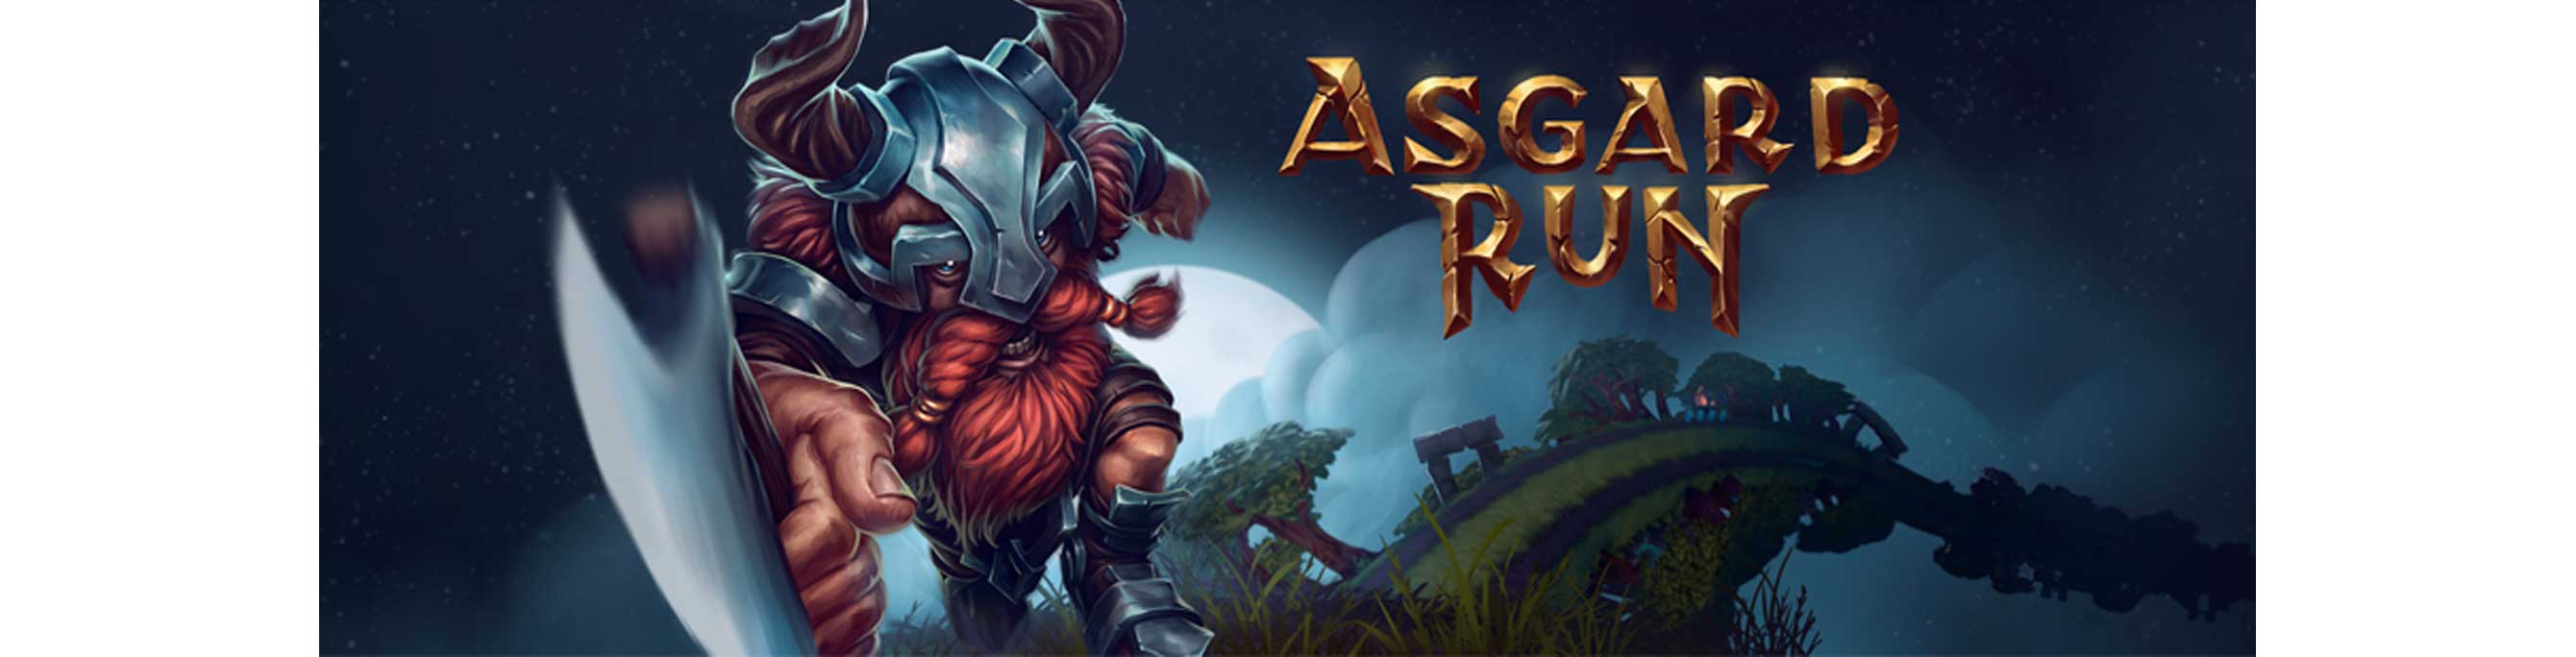 دانلود بازی Asgard Run 1.0.163 برای اندروید و آیفون